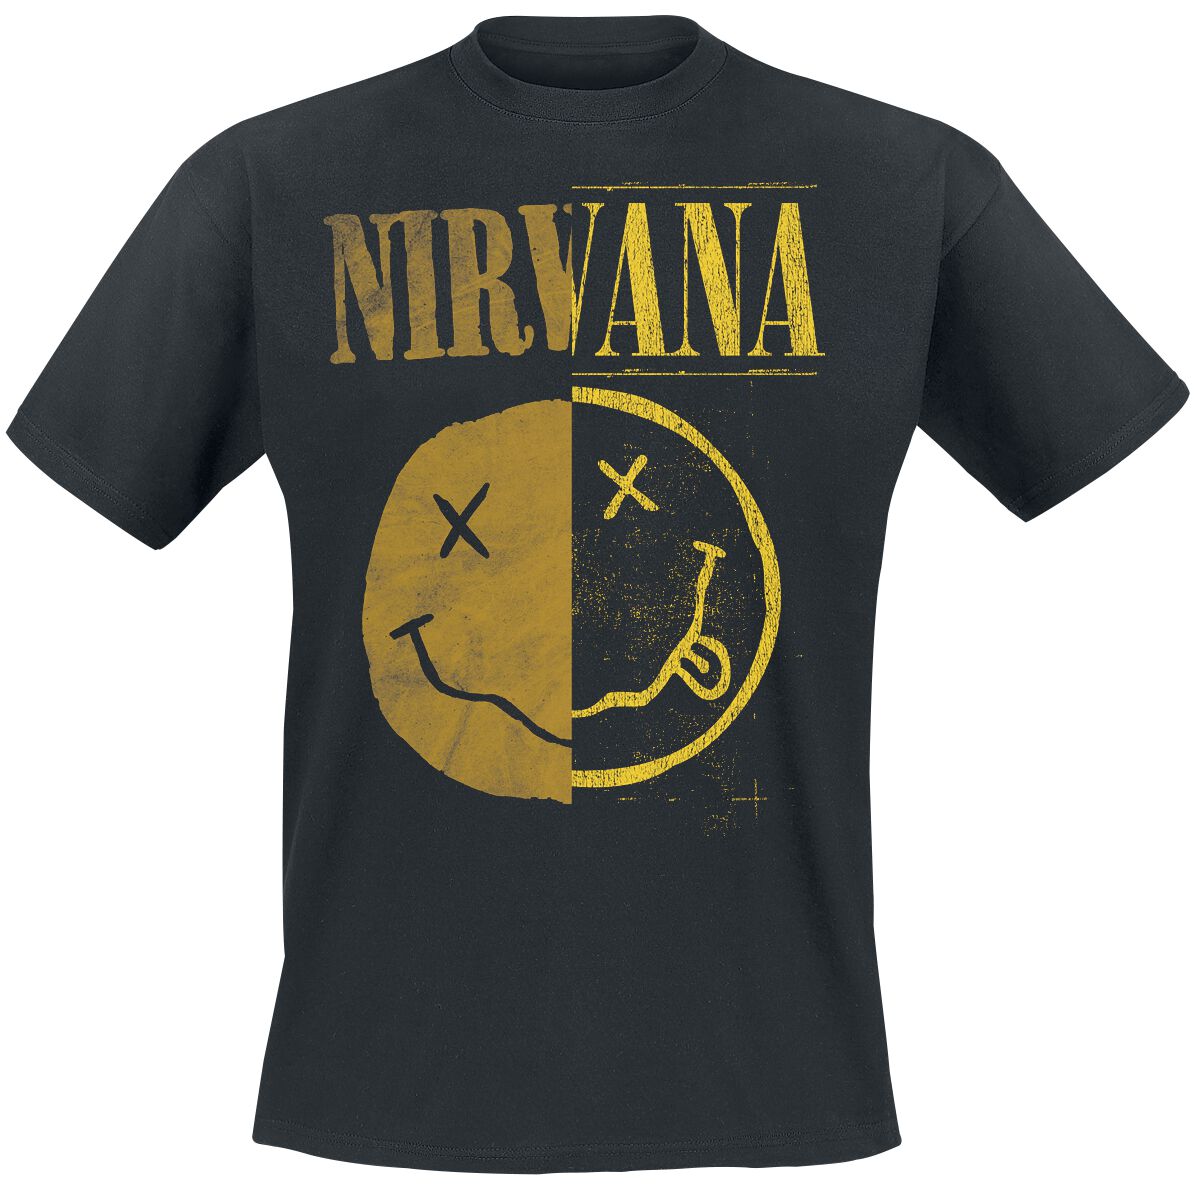 Nirvana T-Shirt - Spliced Smiley - S bis XXL - für Männer - Größe L - schwarz  - Lizenziertes Merchandise!